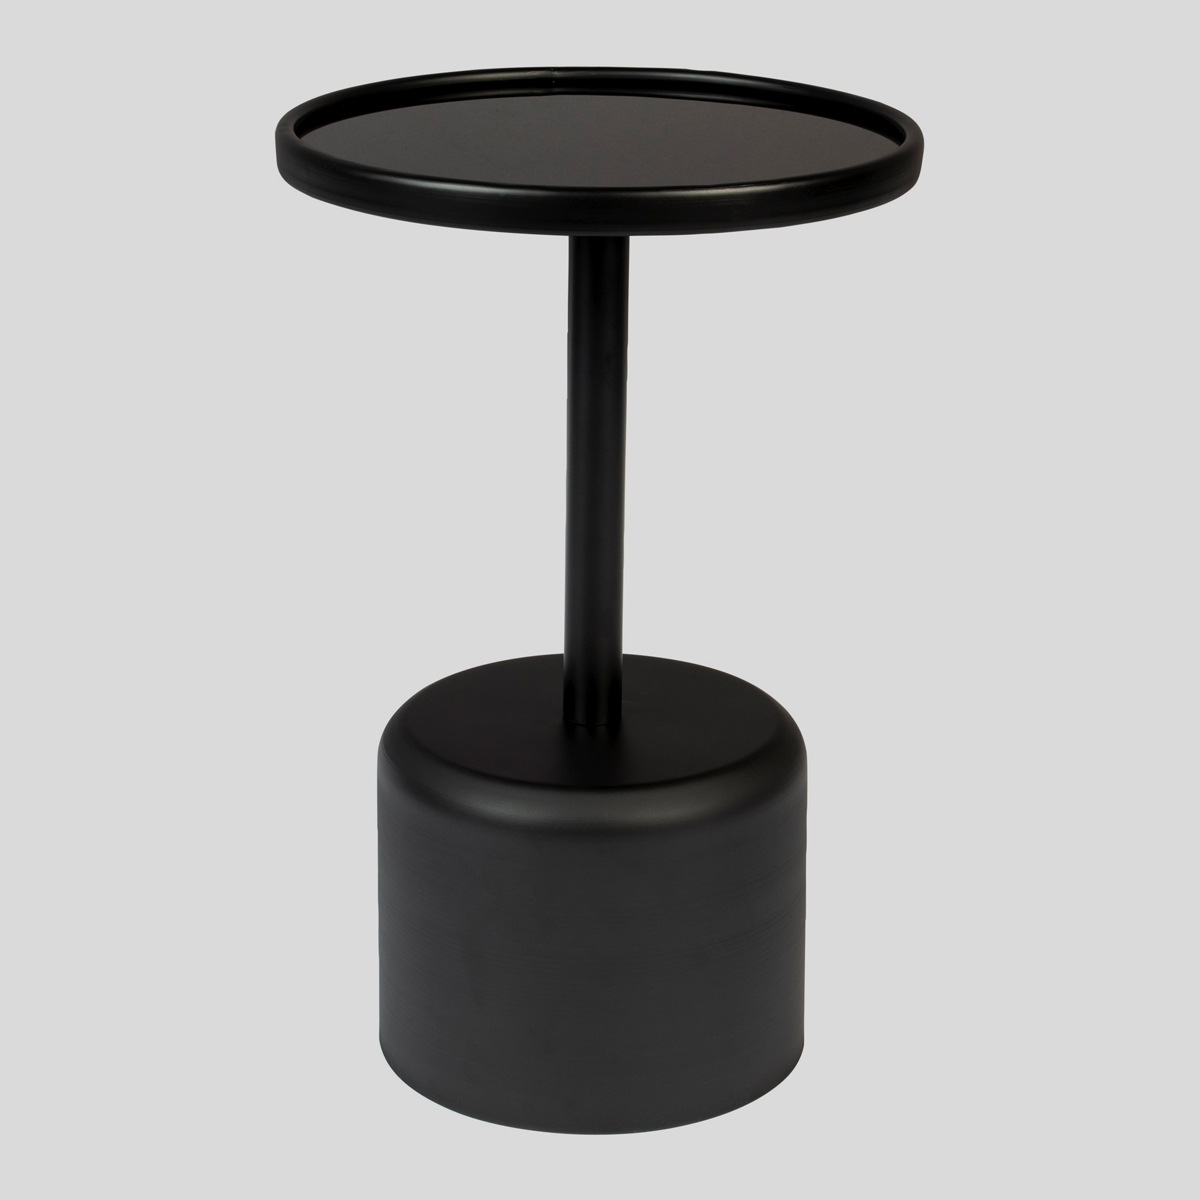 Het zwarte, glazen tafelblad geeft een stijlvolle uitstraling aan de moderne salontafel. 